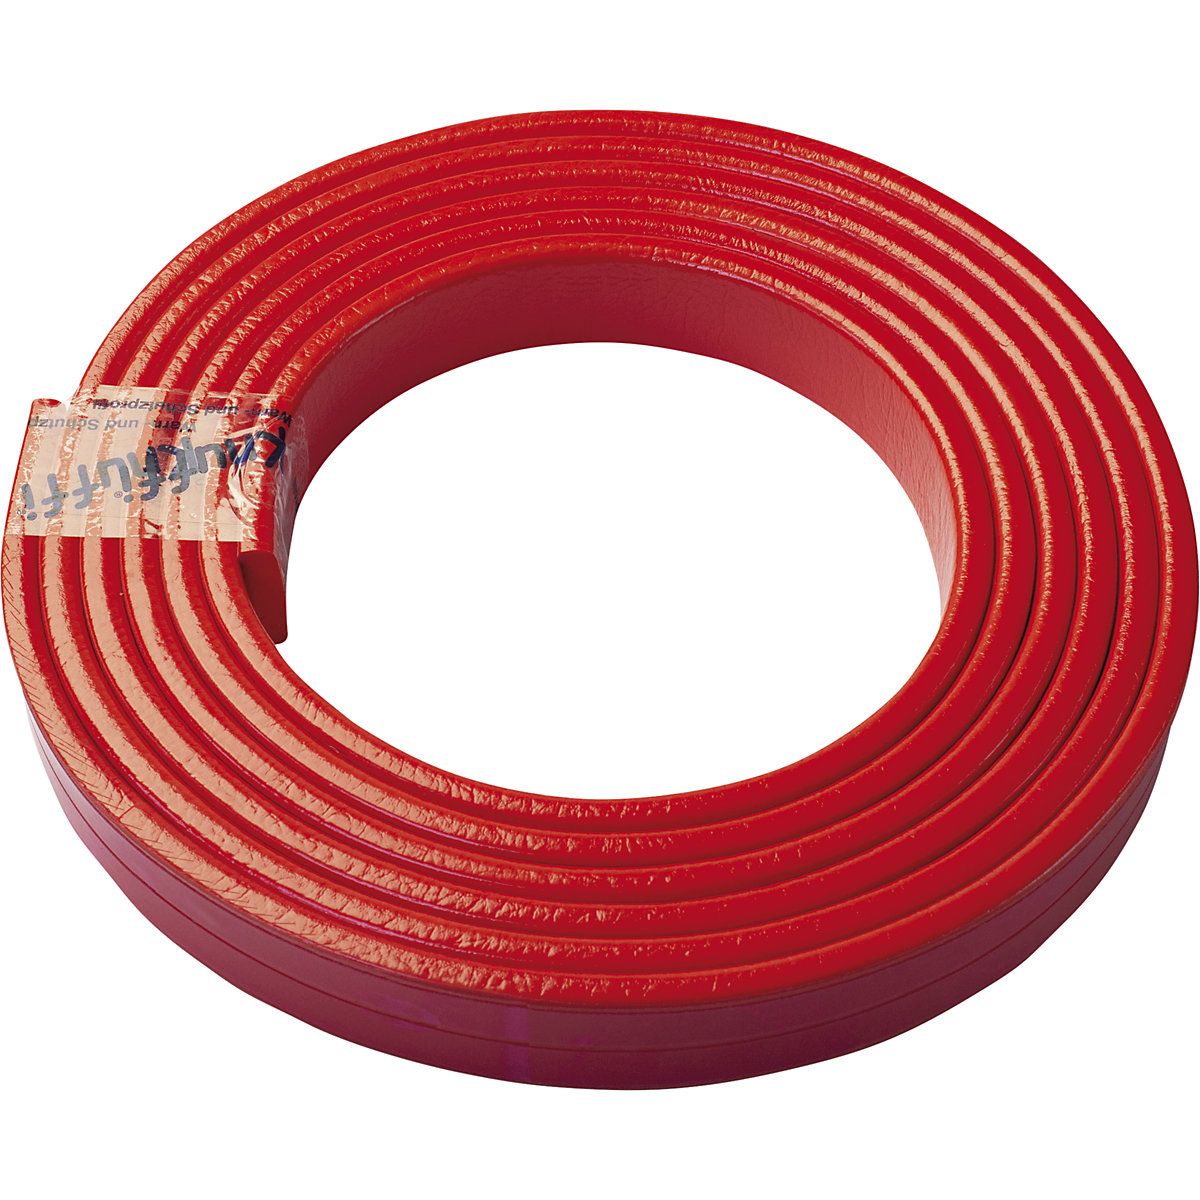 Knuffi®-oppervlaktebescherming – SHG, type F, 1 rol à 5 m, rood-30